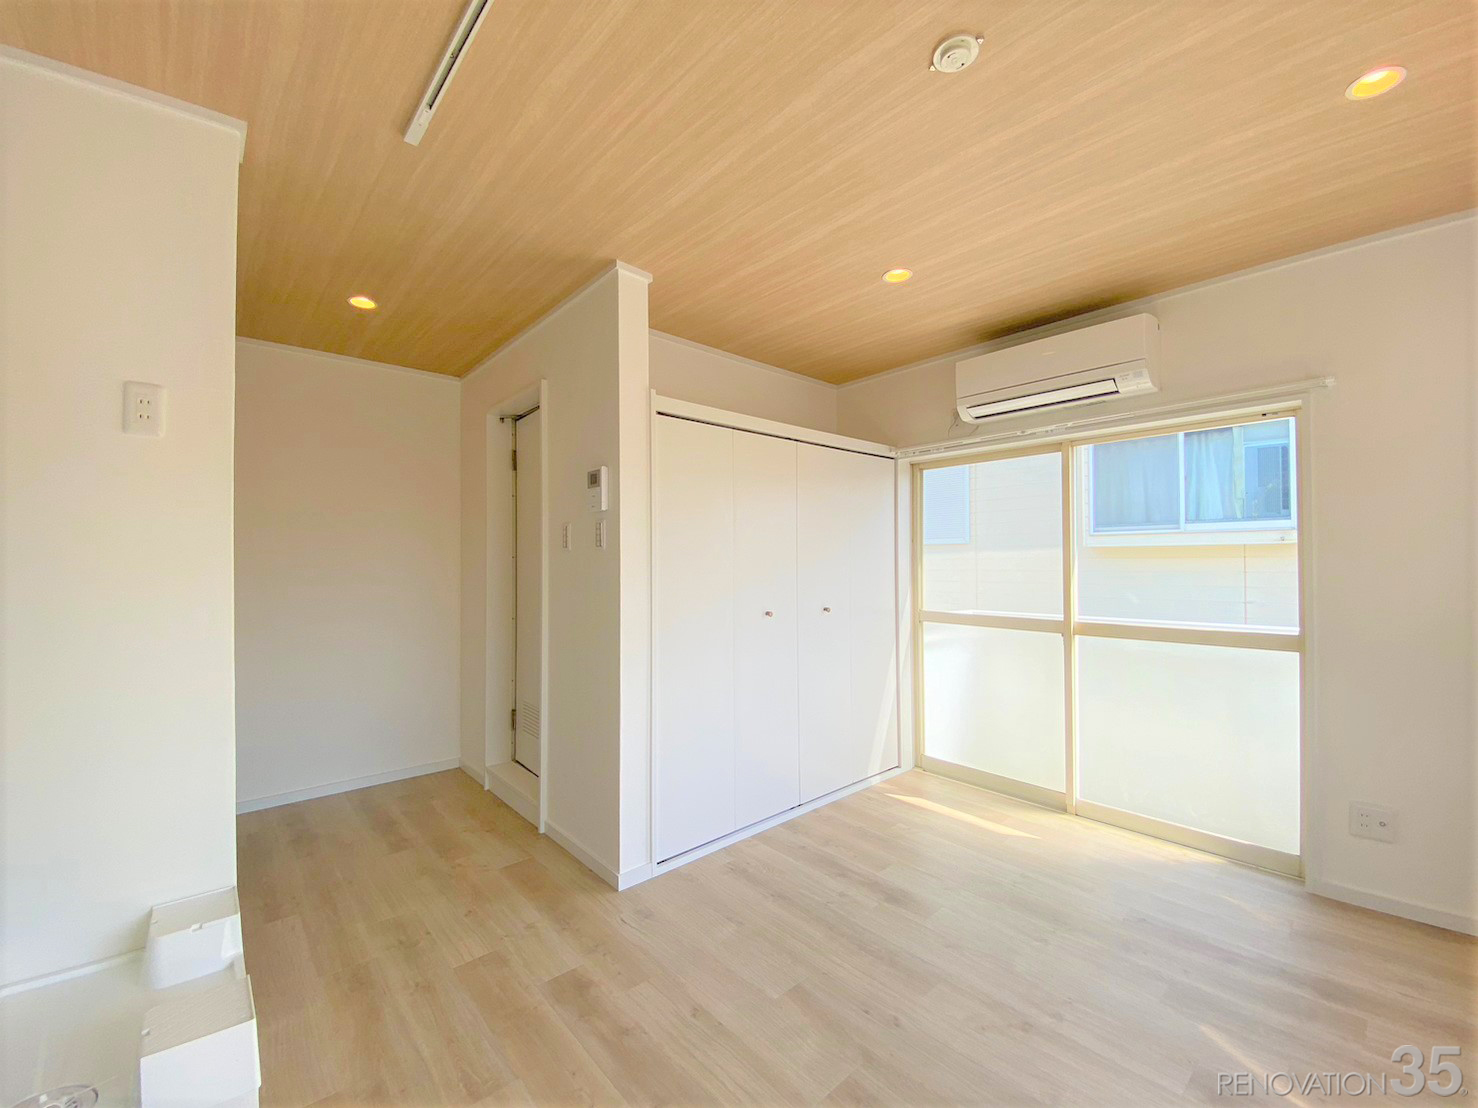 ブルー×ライトな木目で爽やかなお部屋、1Rの空室対策リノベーション神奈川県横浜市、AFTER3